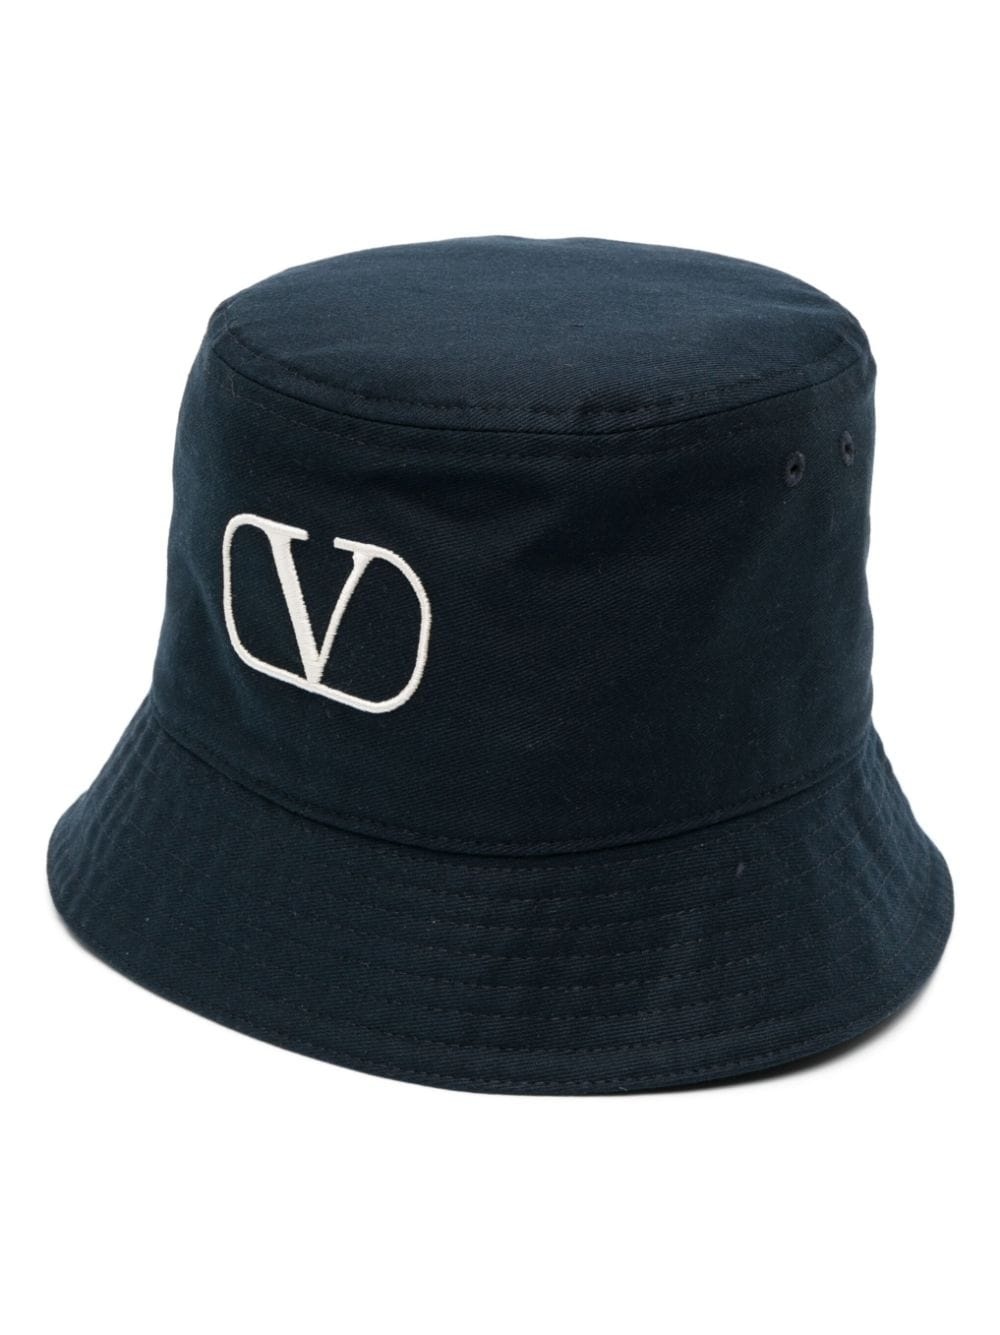 VLogo bucket hat - 1